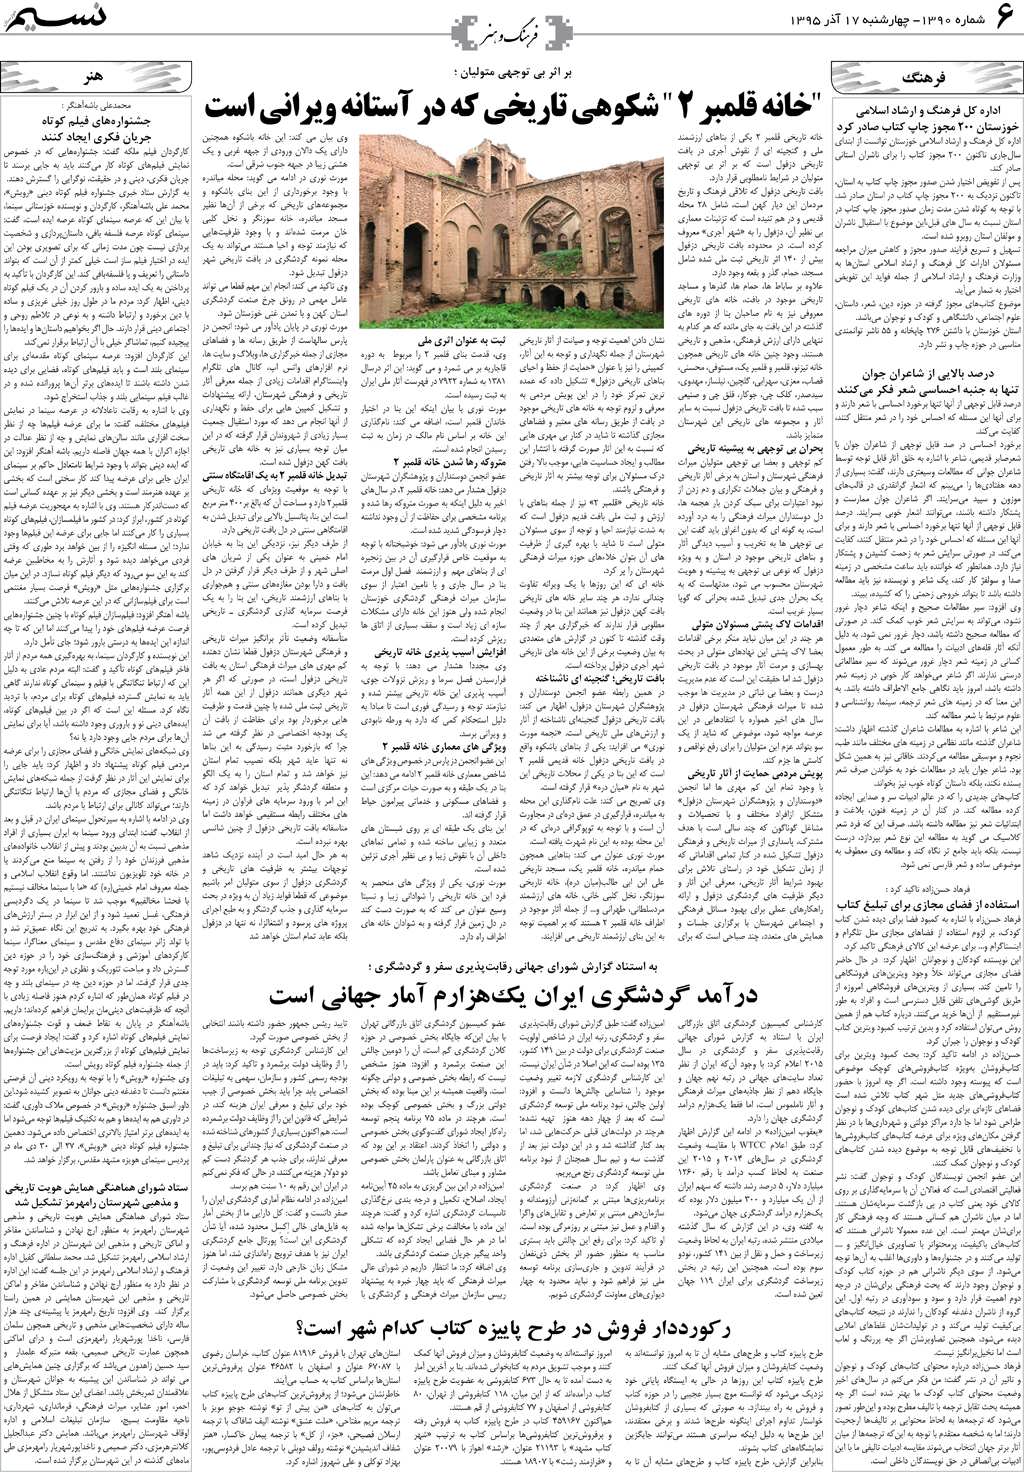 صفحه فرهنگ و هنر روزنامه نسیم شماره 1390